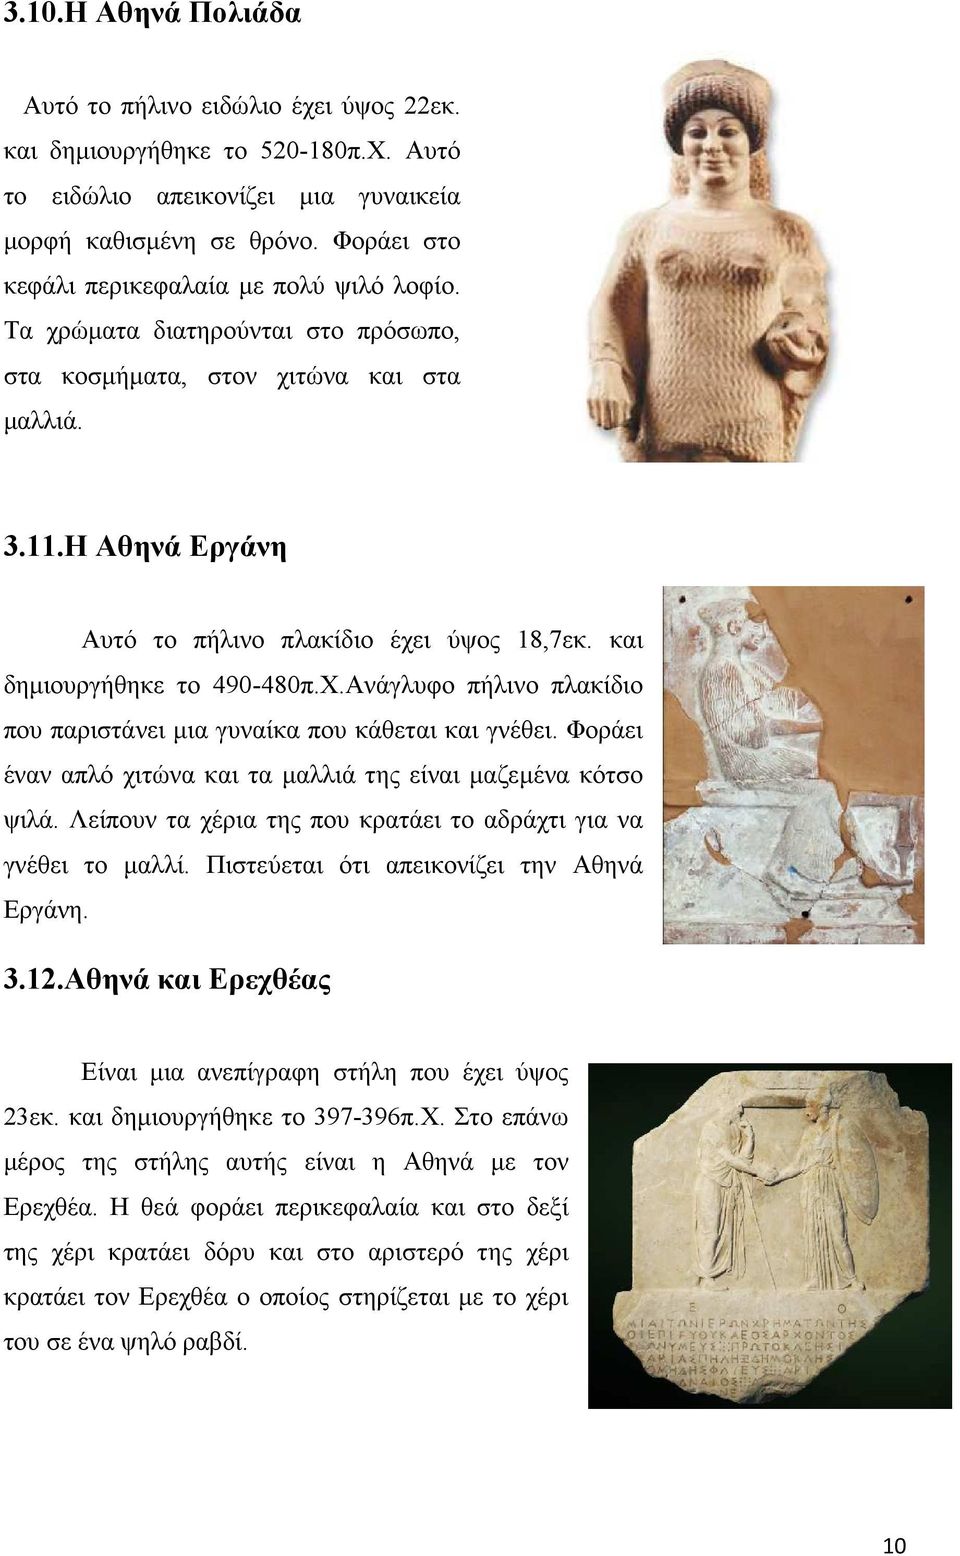 και δηµιουργήθηκε το 490-480π.Χ.Ανάγλυφο πήλινο πλακίδιο που παριστάνει µια γυναίκα που κάθεται και γνέθει. Φοράει έναν απλό χιτώνα και τα µαλλιά της είναι µαζεµένα κότσο ψιλά.